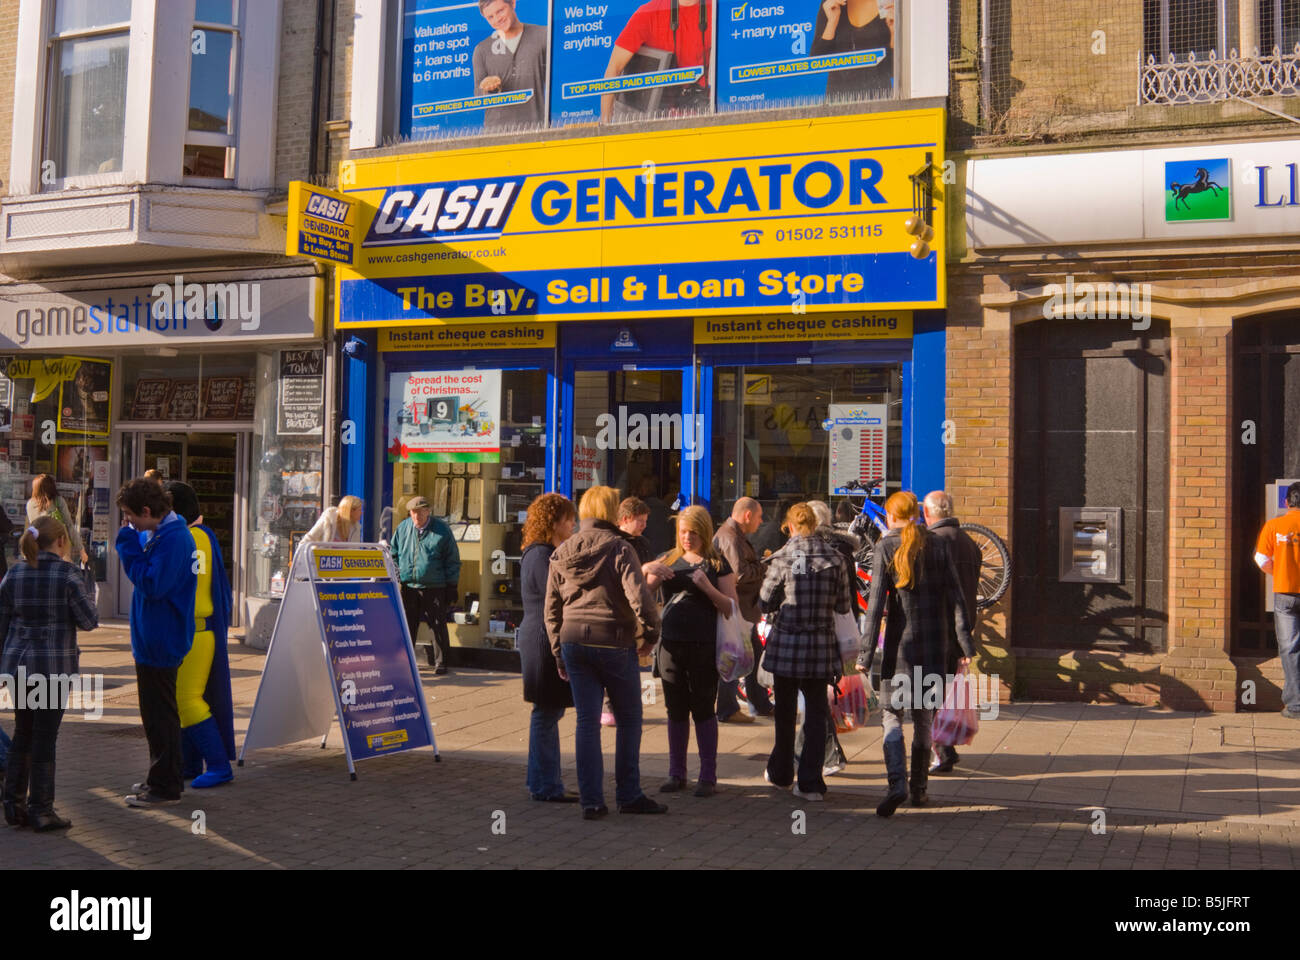 Menschen außerhalb Cash Generator-Shop in Lowestoft, Suffolk, Uk, kaufen, verkaufen & Darlehen Shop mit sofortiger Scheck einlösen Stockfoto